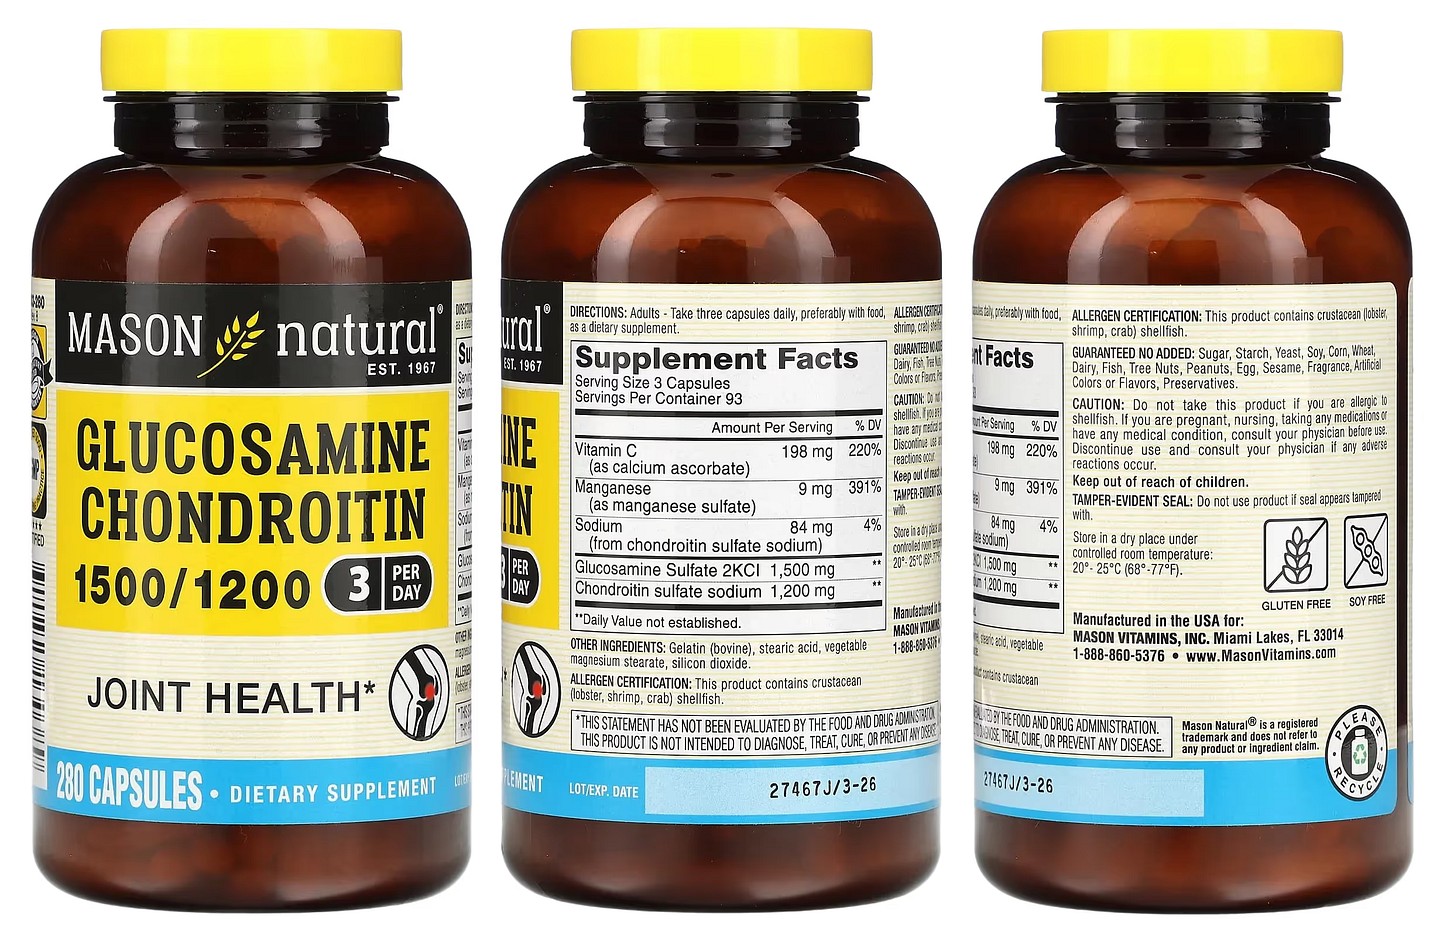 Mason Natural, Glucosamine Chondroitin packaging